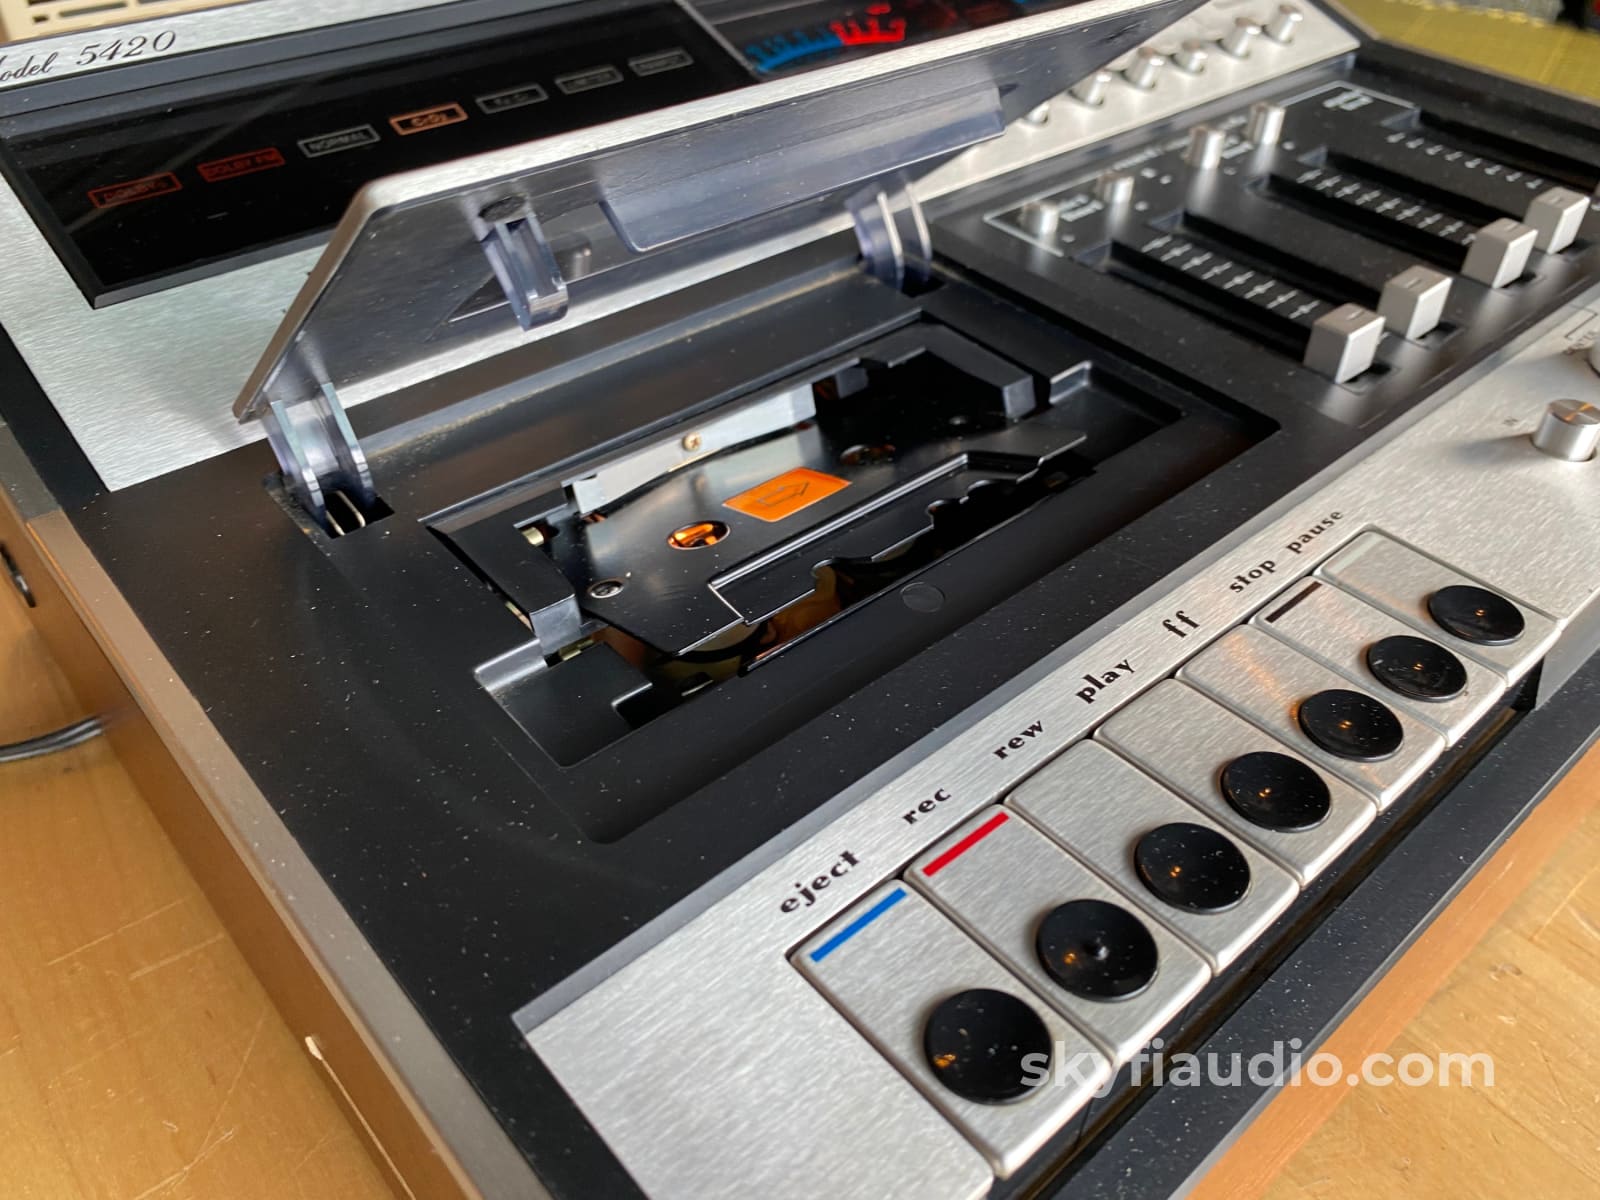 Marantz Model 5420 Tape Deck W/Vu Meters And 4-Ch Mixer